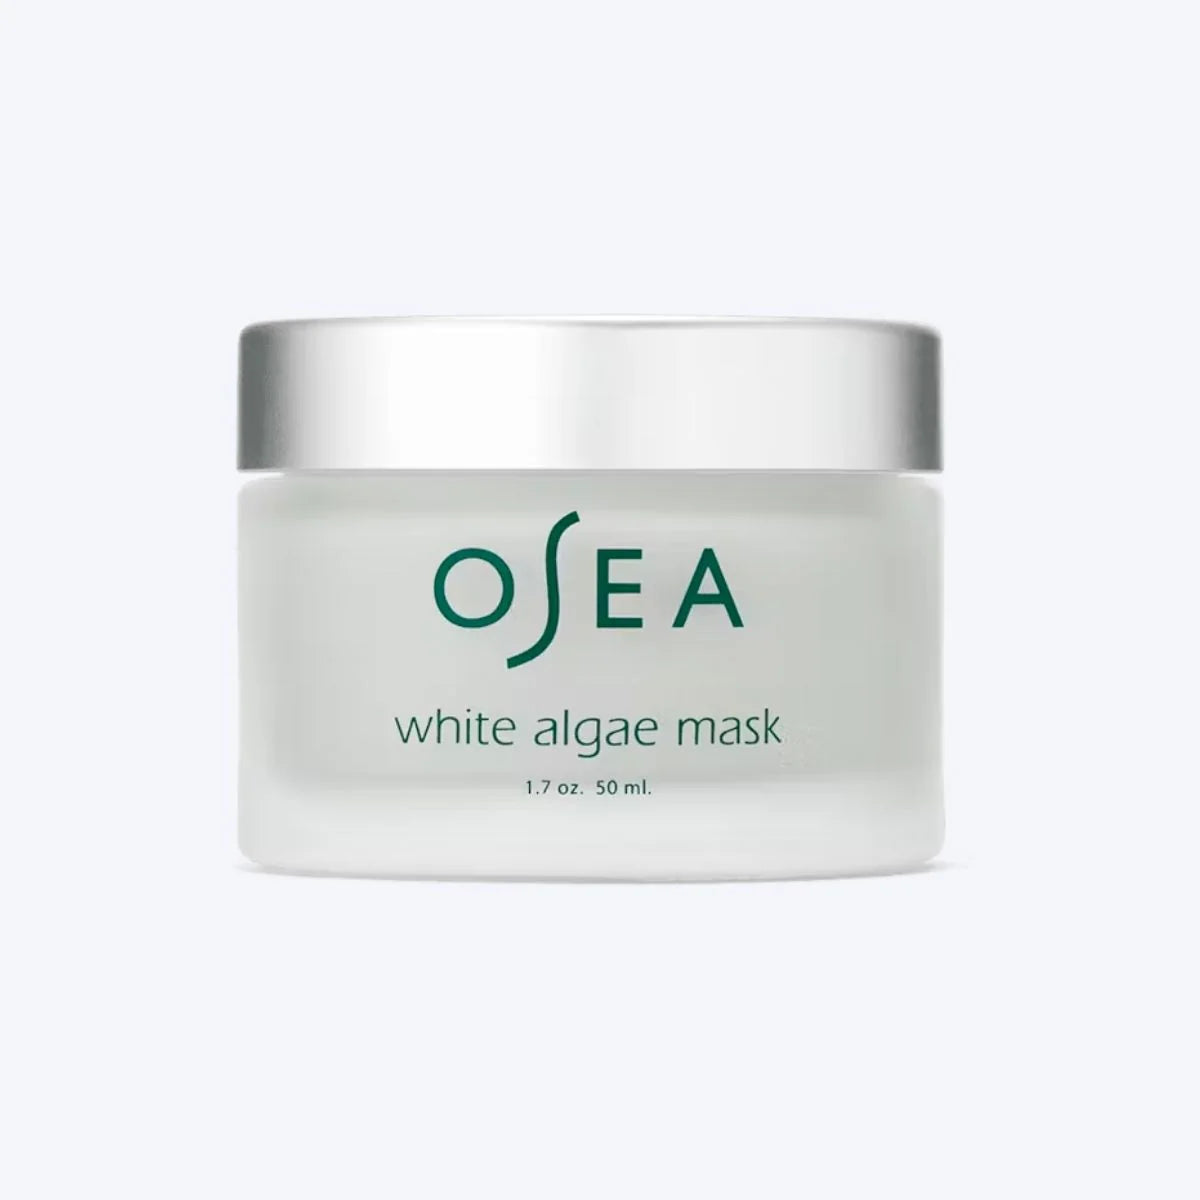 White algae mask by Osea.